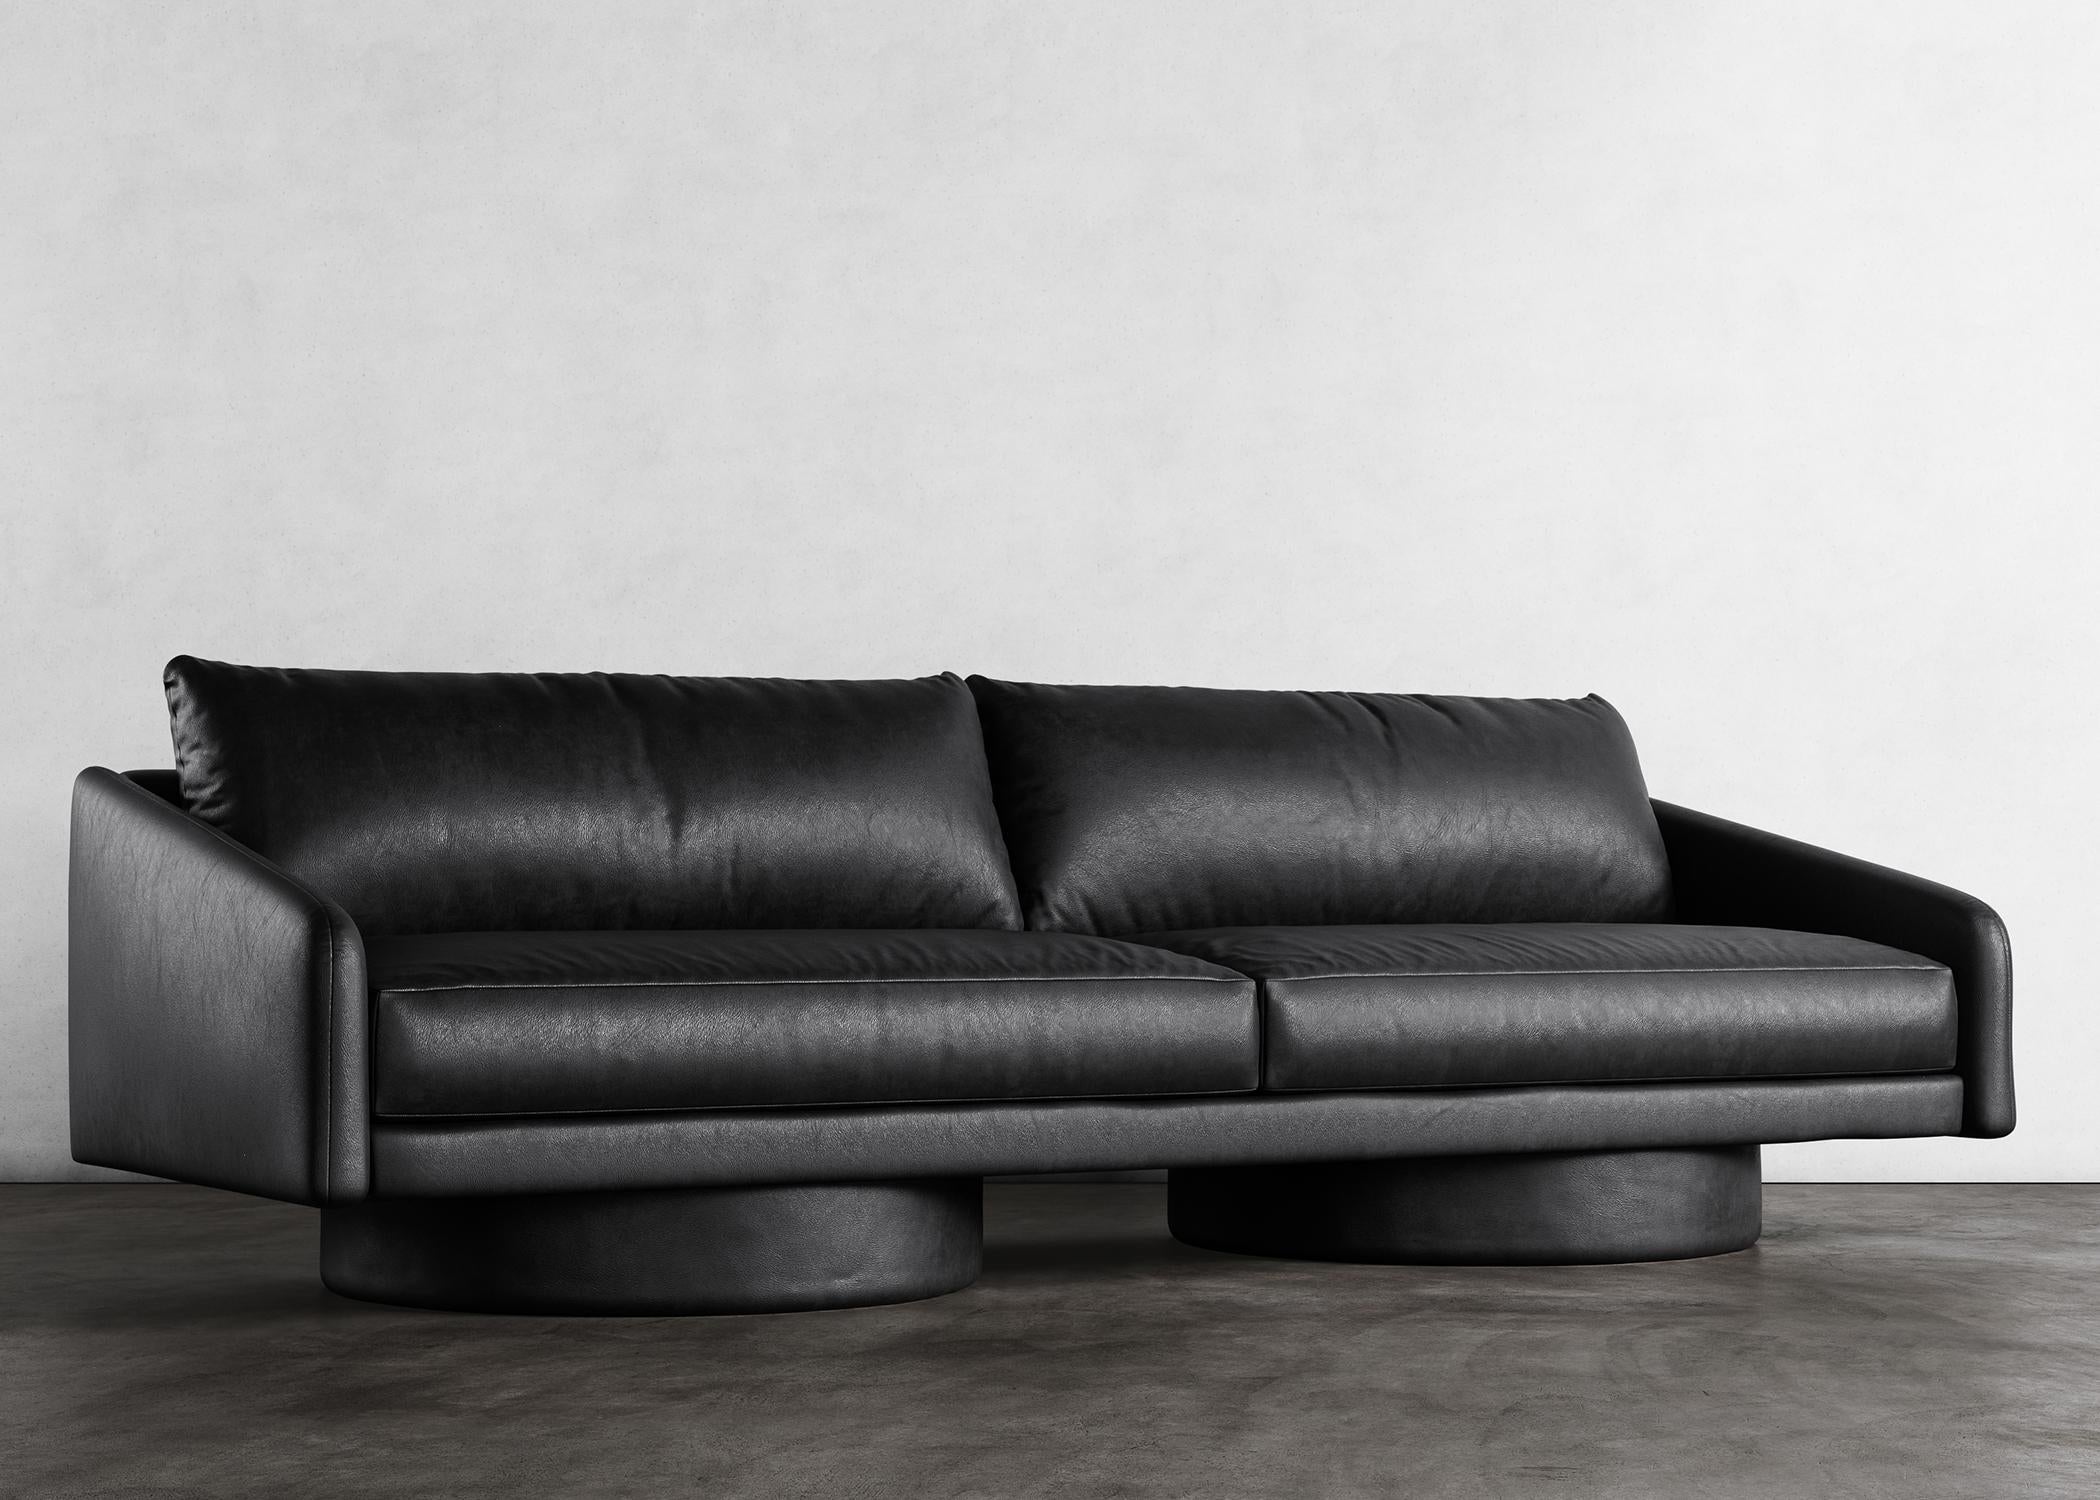 SURGE SOFA - Canapé moderne en simili cuir noir

Le canapé Surge en faux agneau noir est un meuble luxueux et élégant qui convient parfaitement à tout salon moderne. Ce canapé présente un design élégant aux lignes épurées et une esthétique